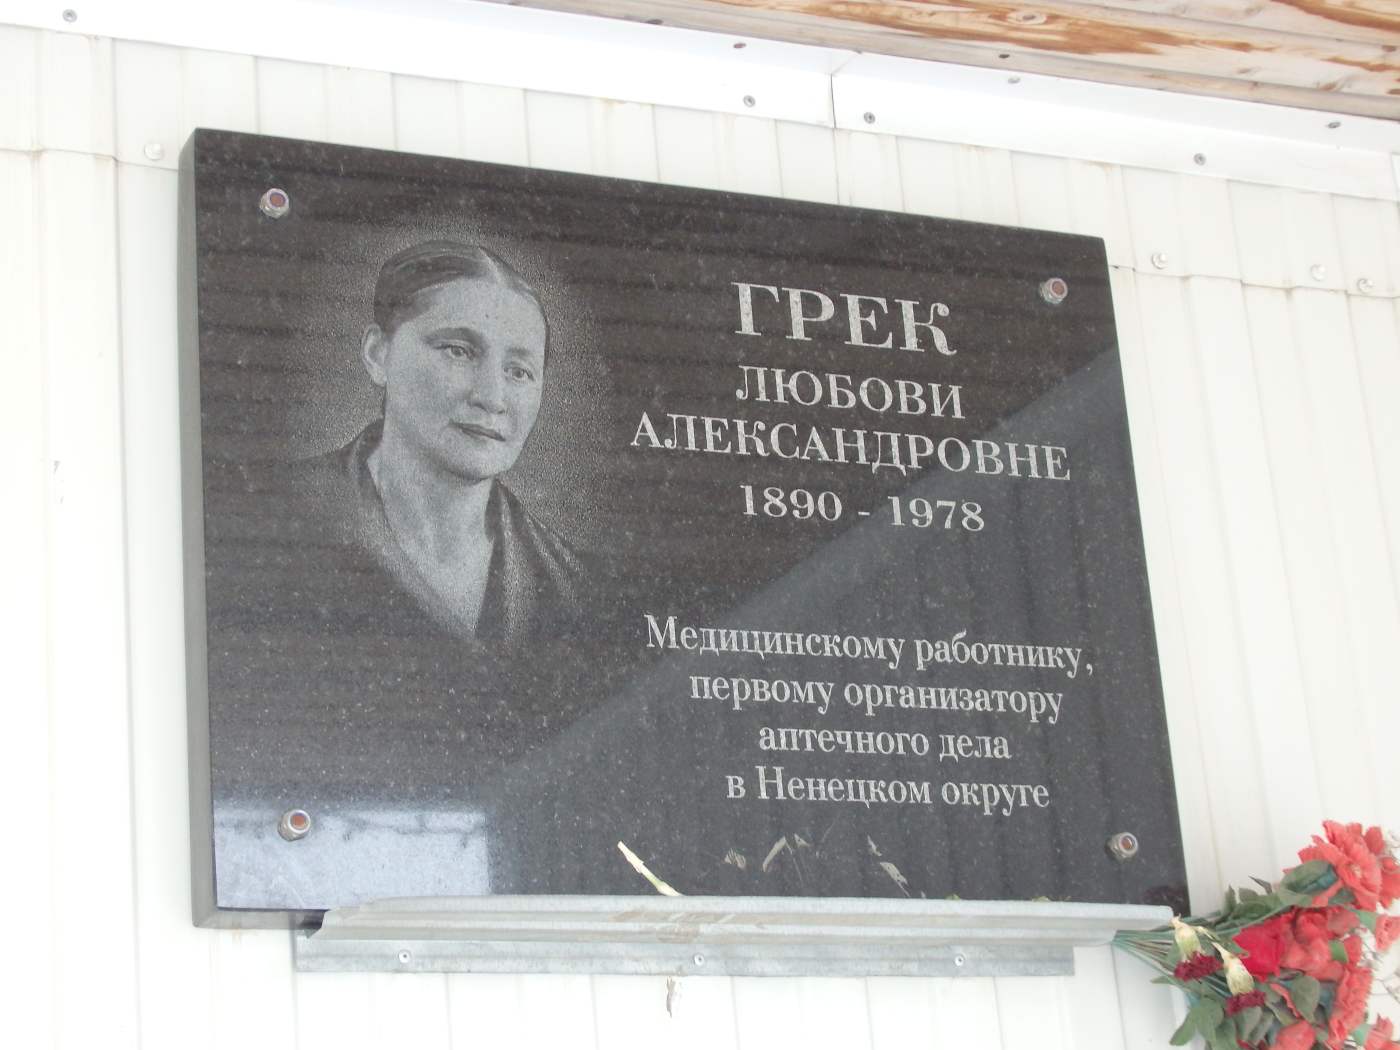 Naryan-Mar, Улица Пырерки, 15. Naryan-Mar — Memorial plaques